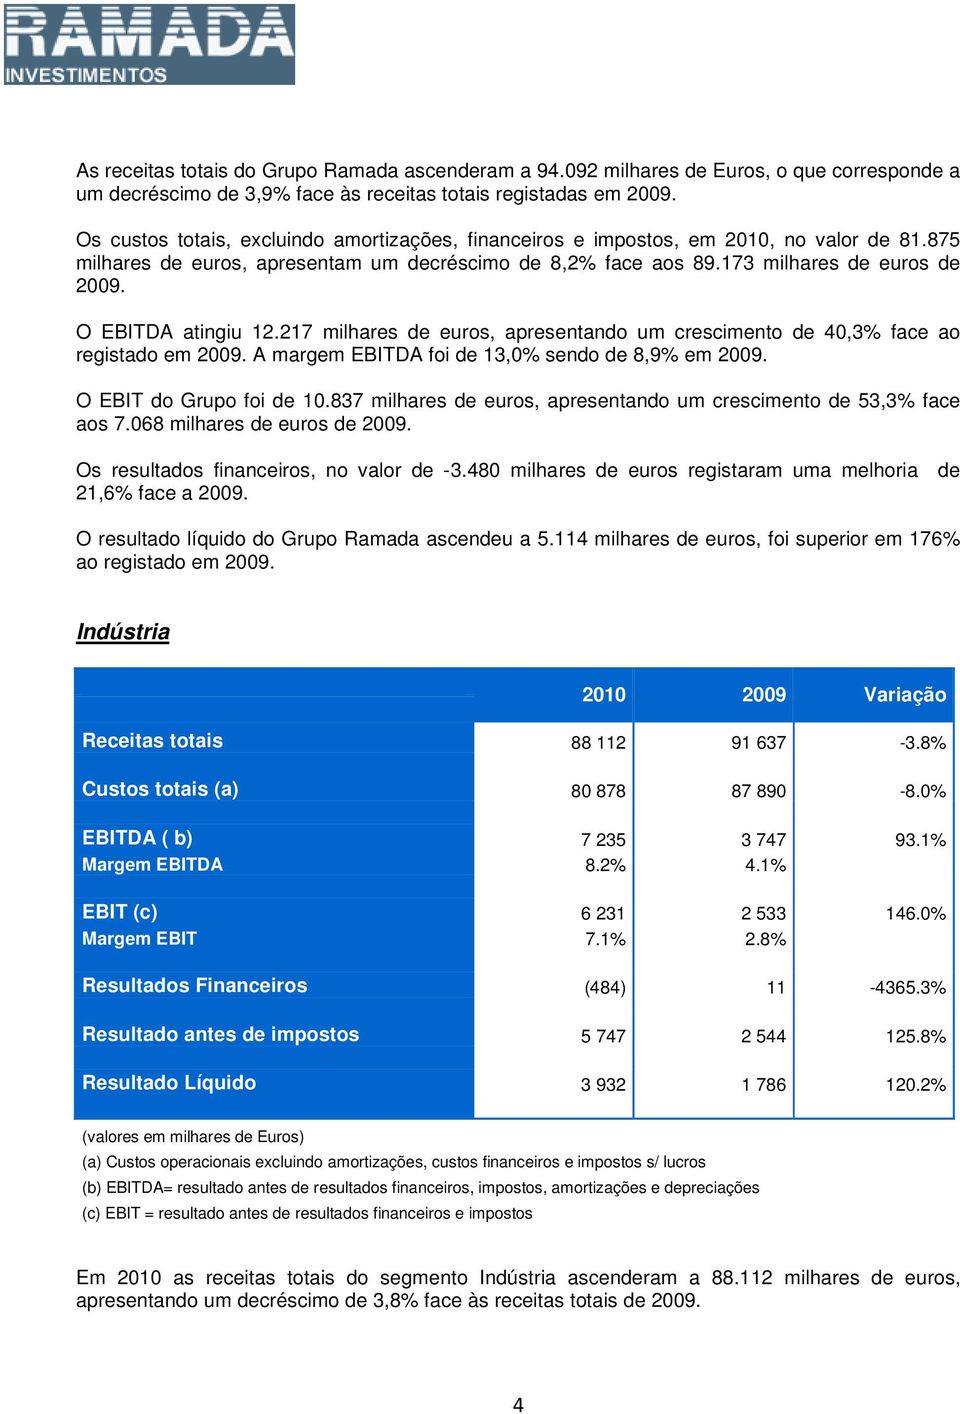 O EBITDA atingiu 12.217 milhares de euros, apresentando um crescimento de 40,3% face ao registado em 2009. A margem EBITDA foi de 13,0% sendo de 8,9% em 2009. O EBIT do Grupo foi de 10.